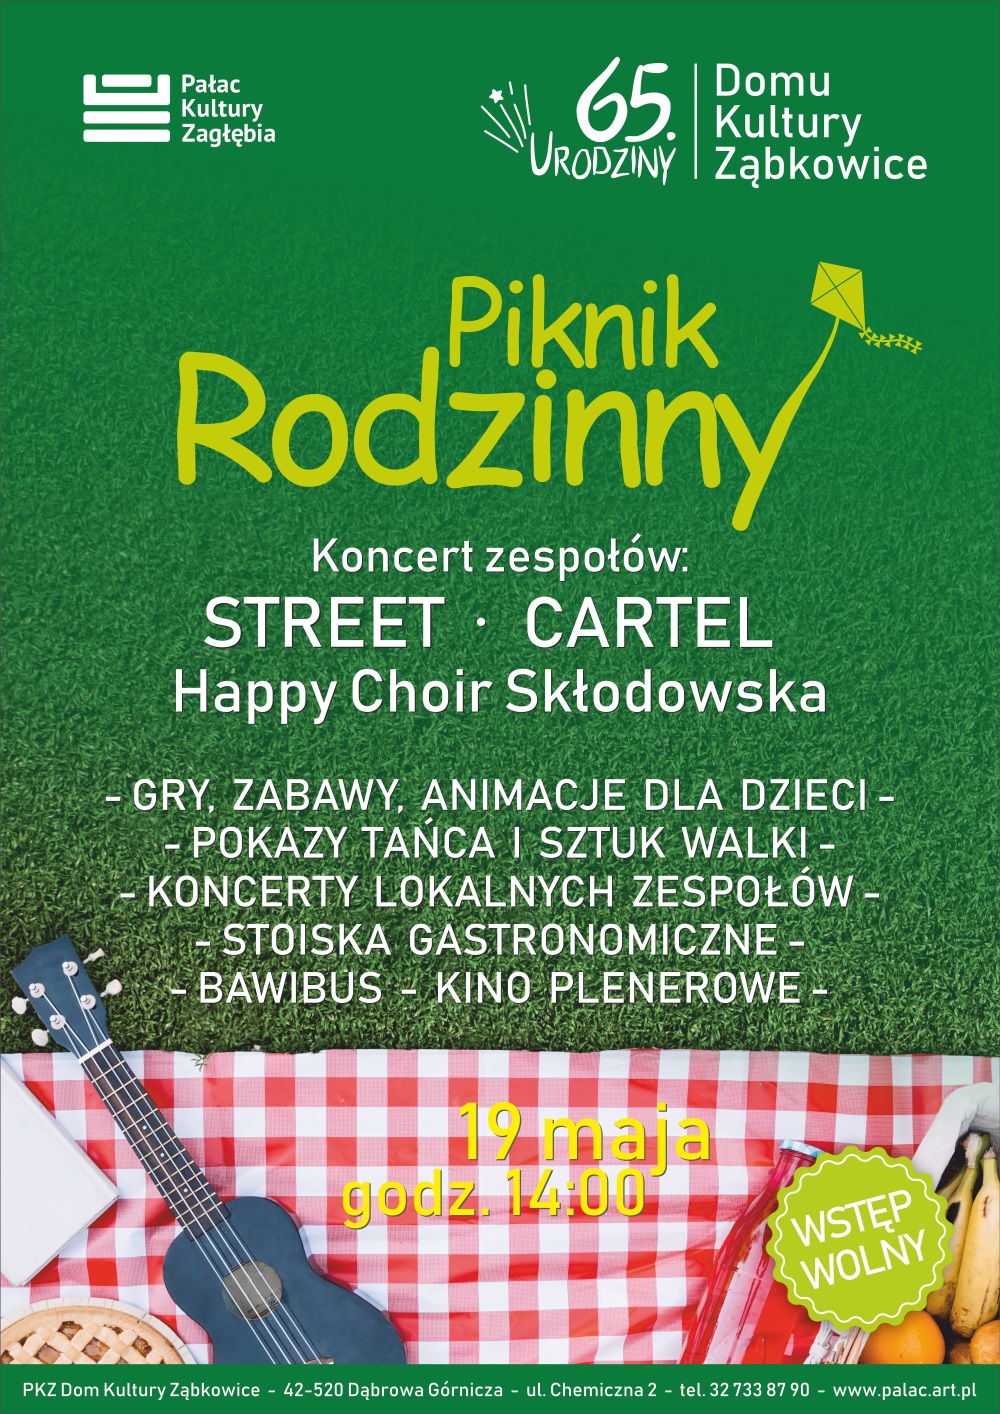 Piknik Rodzinny - urodziny DKZ